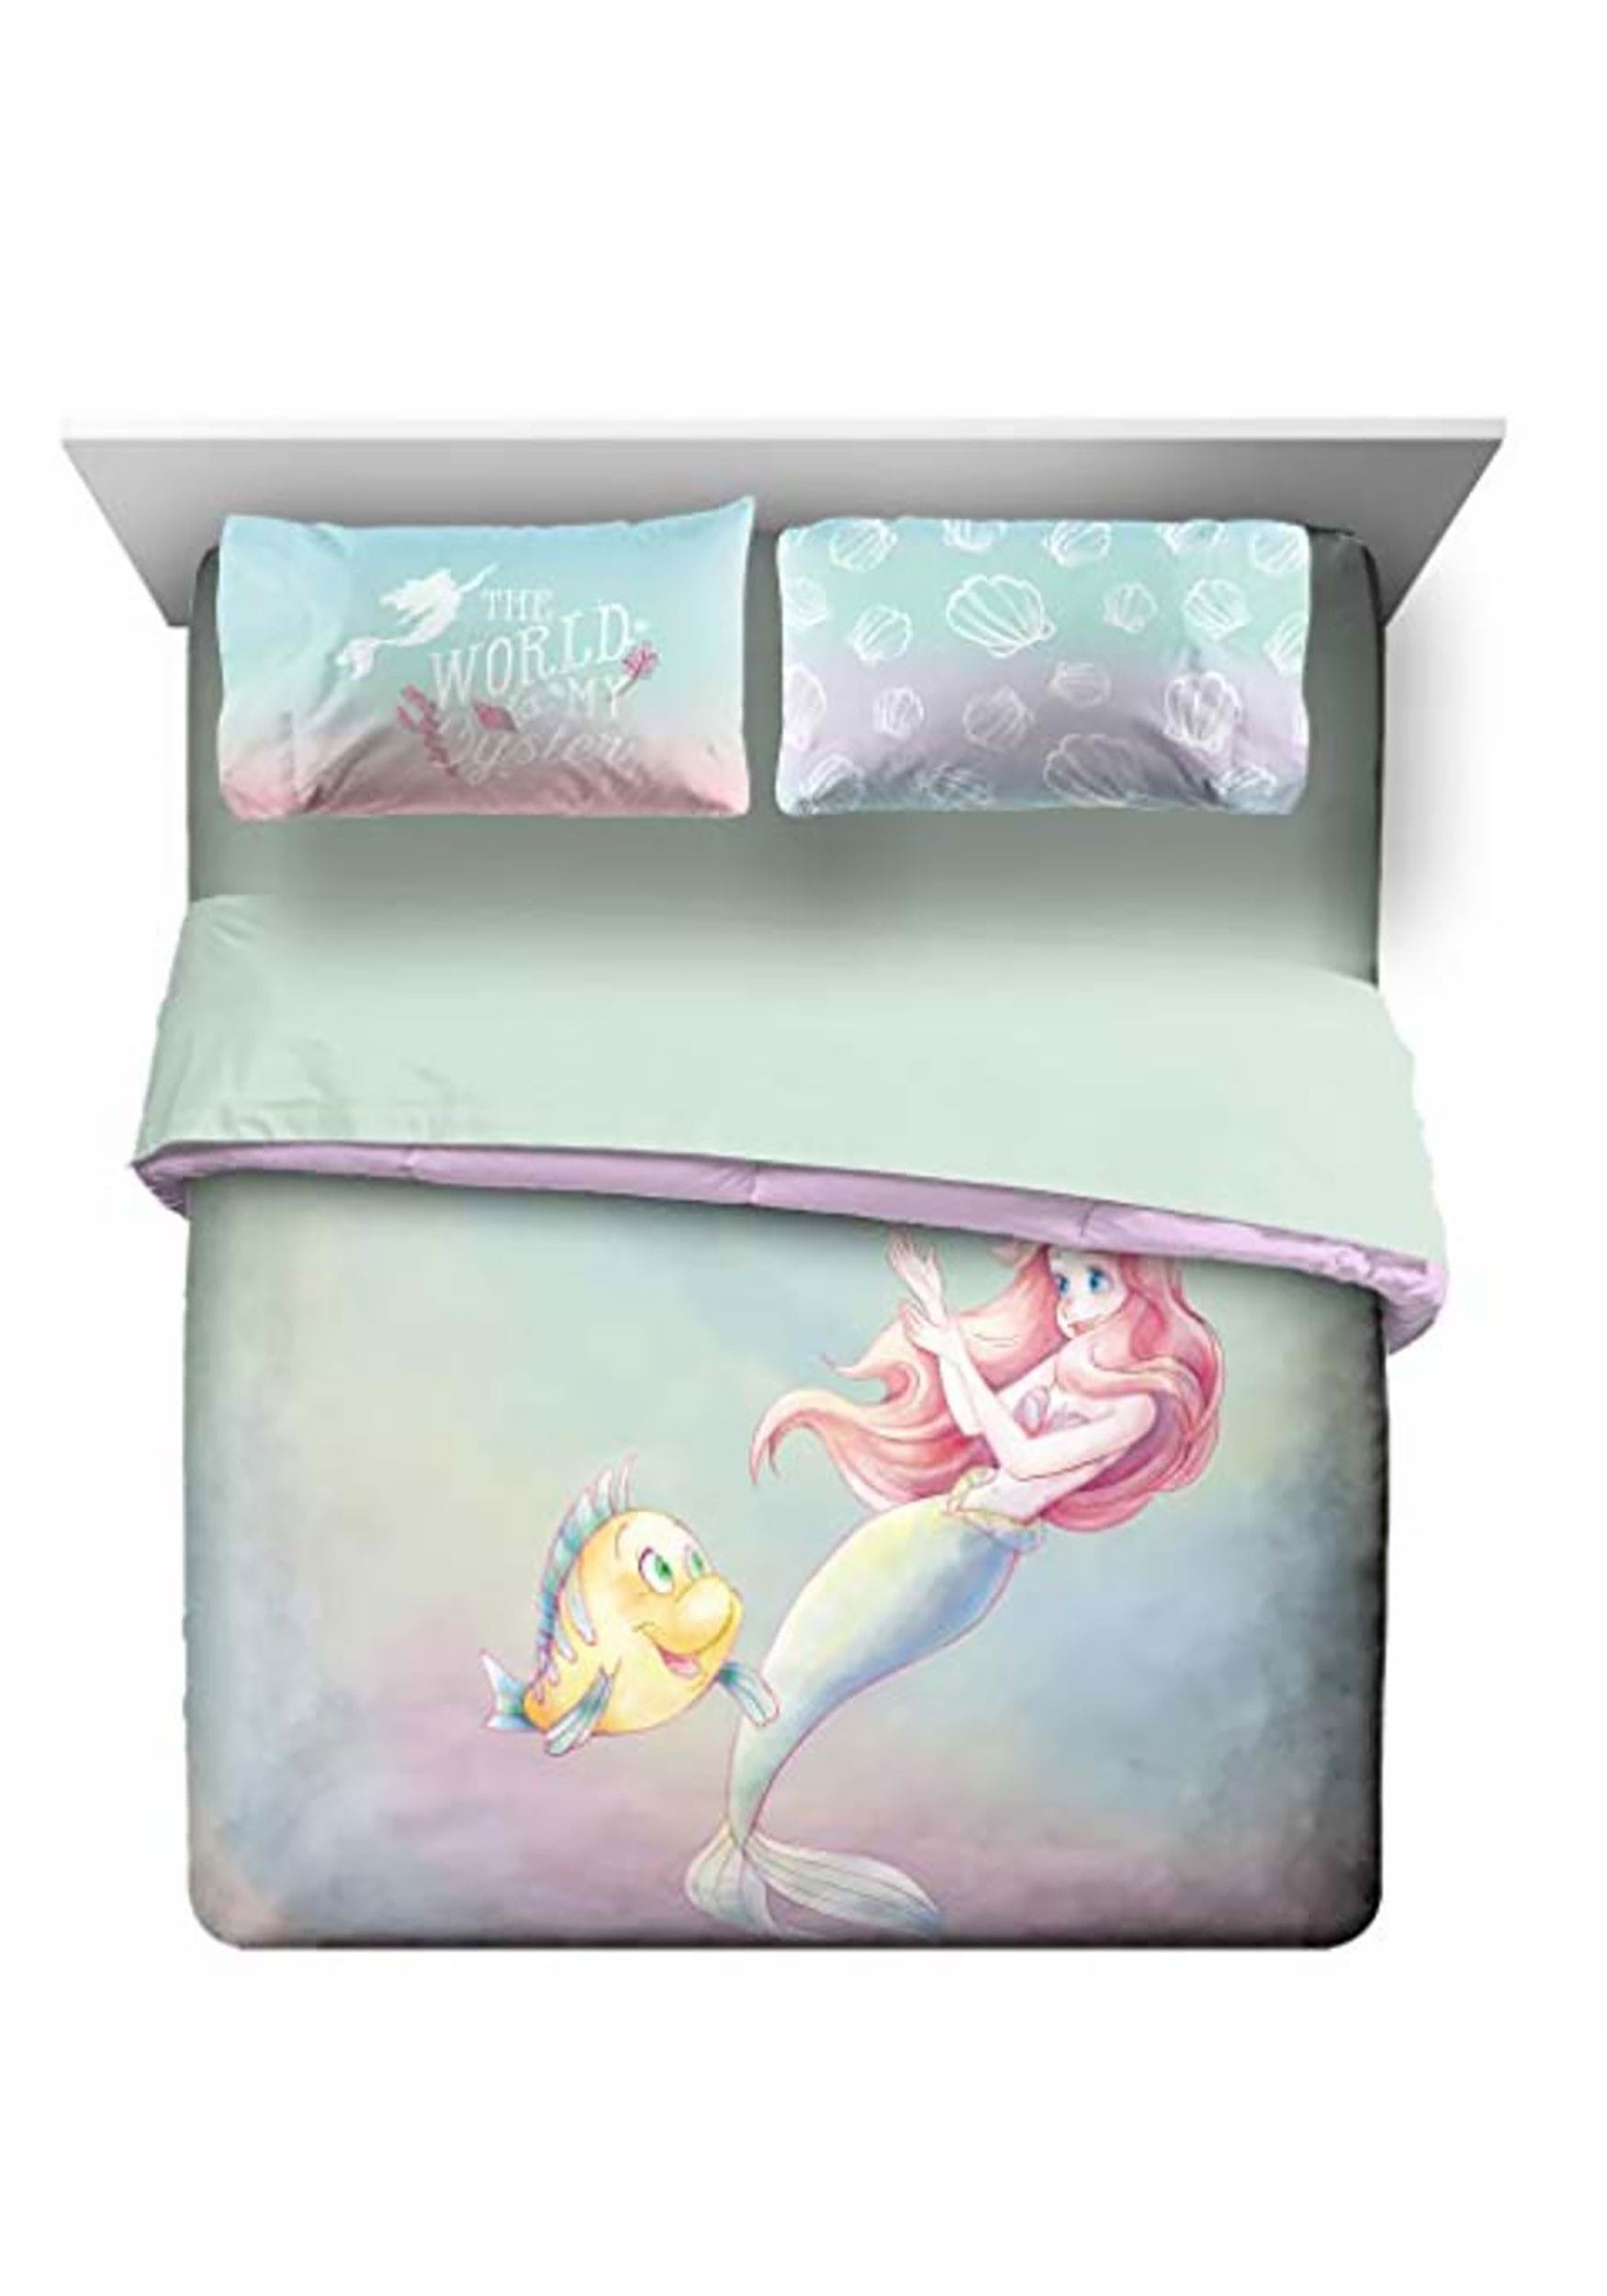 Disney Little Mermaid Full Comforter and Pillow Case Set